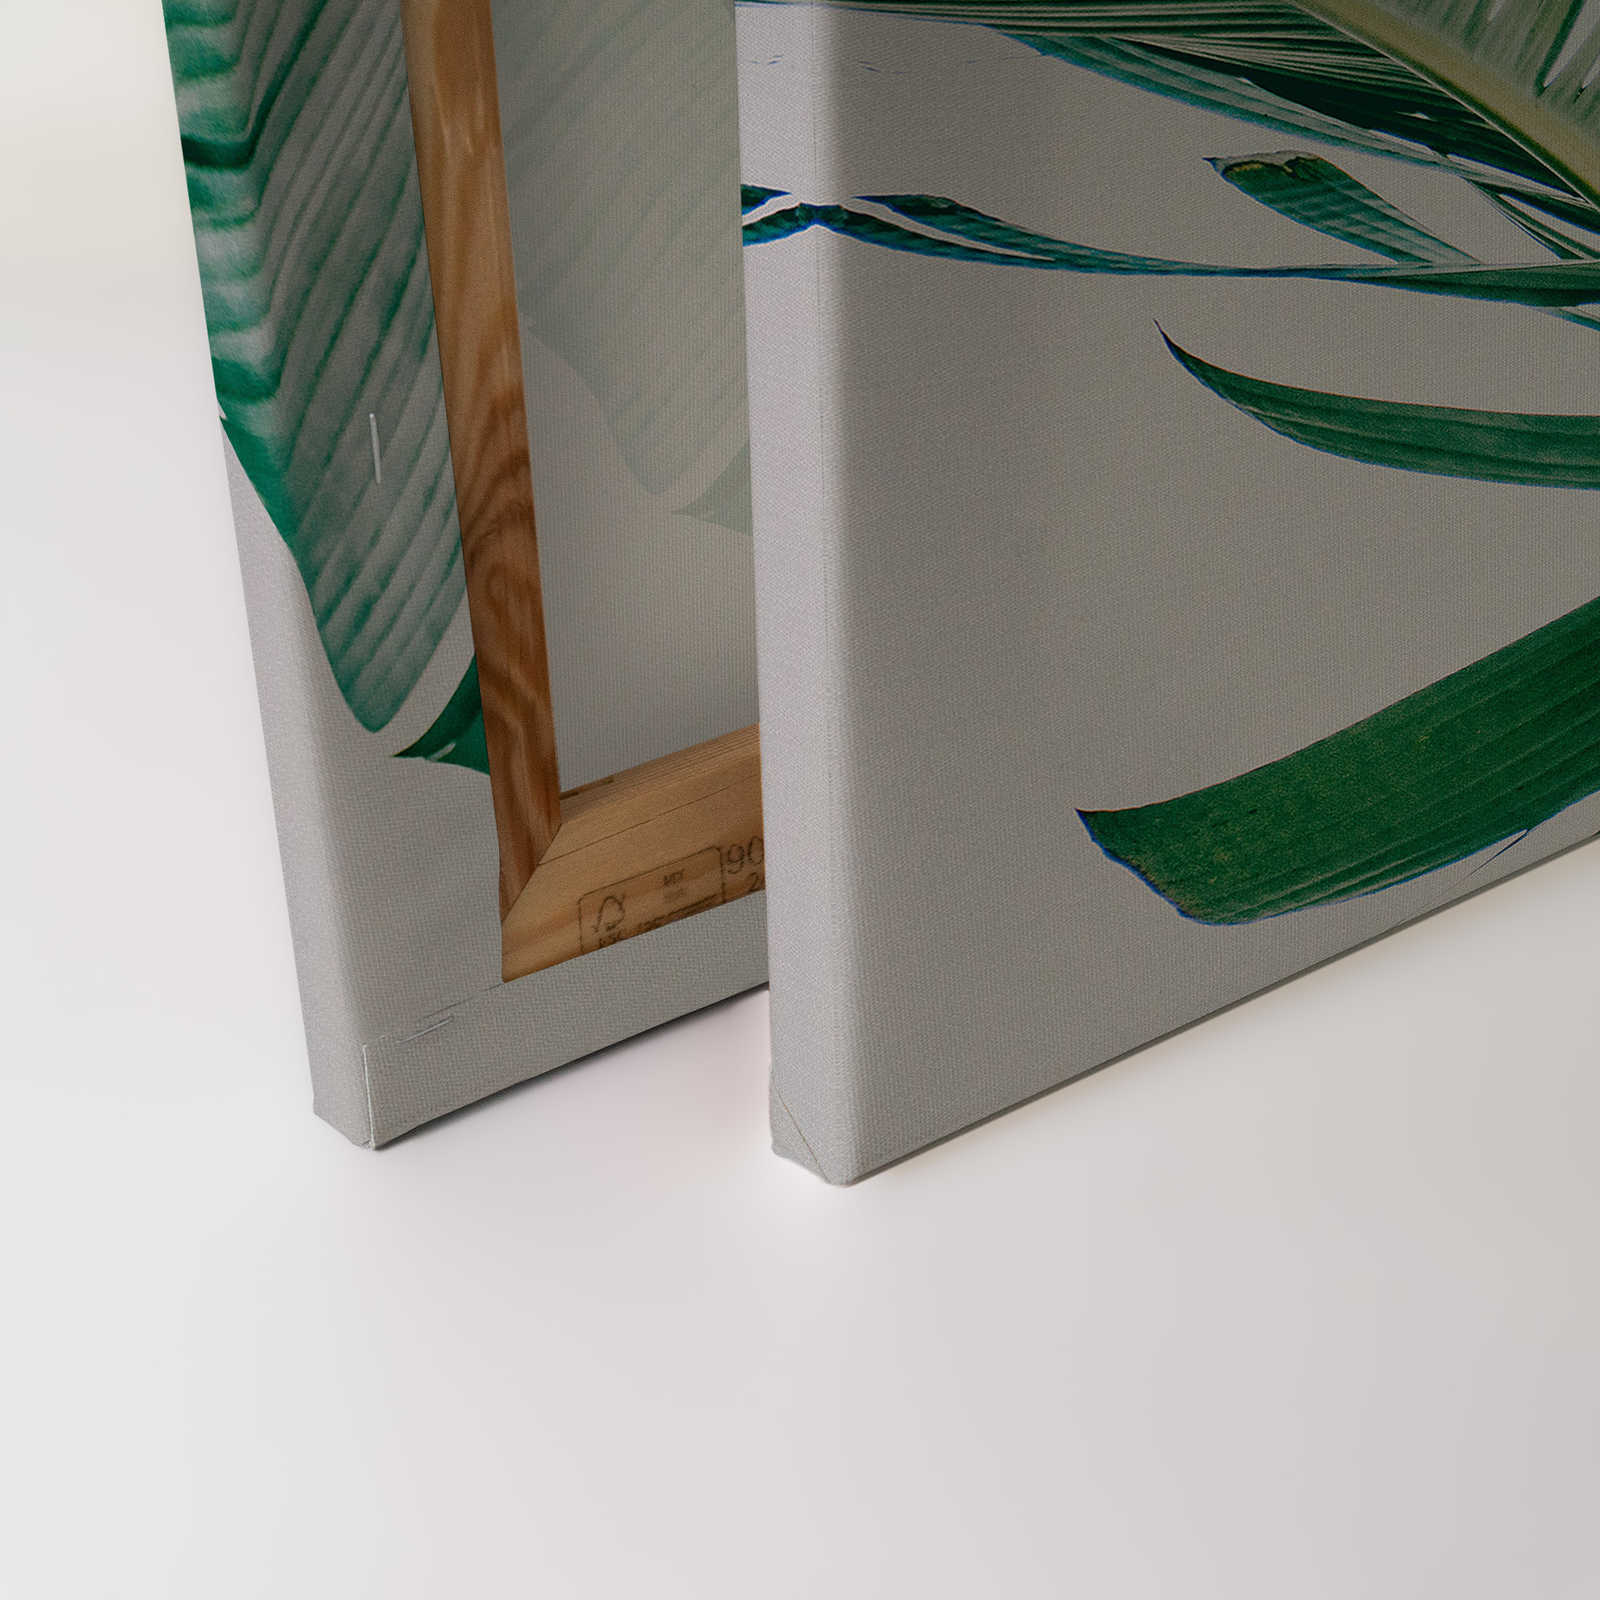             Canvas schilderij met palmbladeren natuurlijk motief - 0,90 m x 0,60 m
        